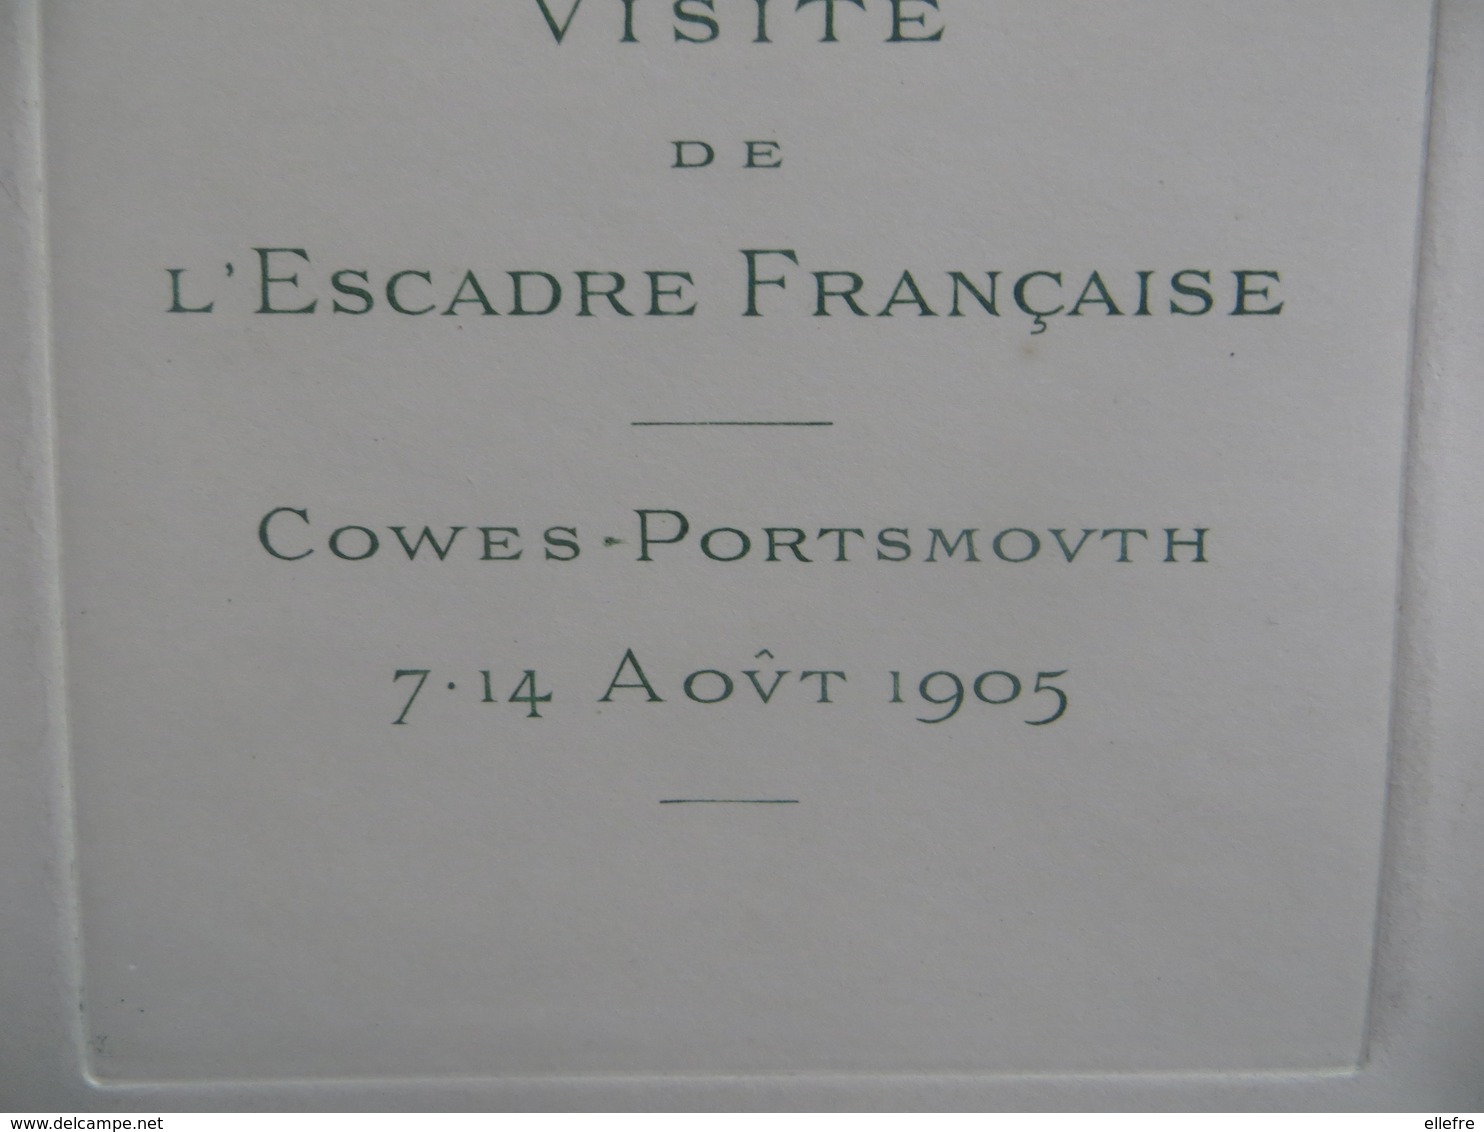 Marine De Guerre - Carte Commémorative Visite De L' Escadre Française COWES - PORTSMOUTH  7 14 Aout 1905- Stren Paris - Historical Documents